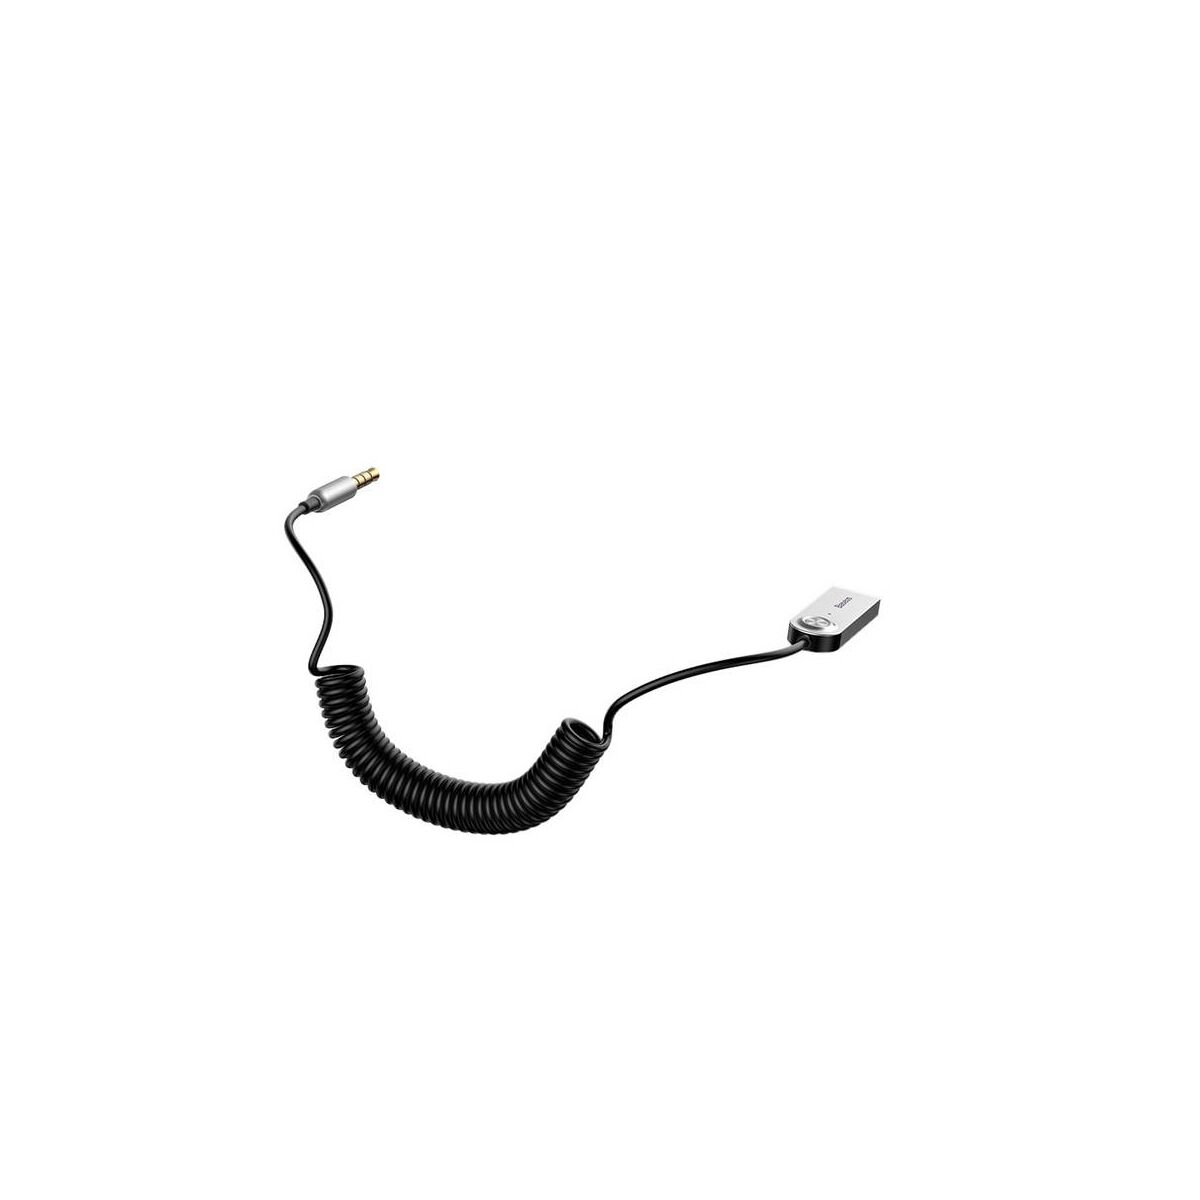 Kép 4/8 - Baseus átalakító kábel, BA01 USB + vezeték nélküli adapterről 3.5 mm Jack bemenetre, fekete (CABA01-01)